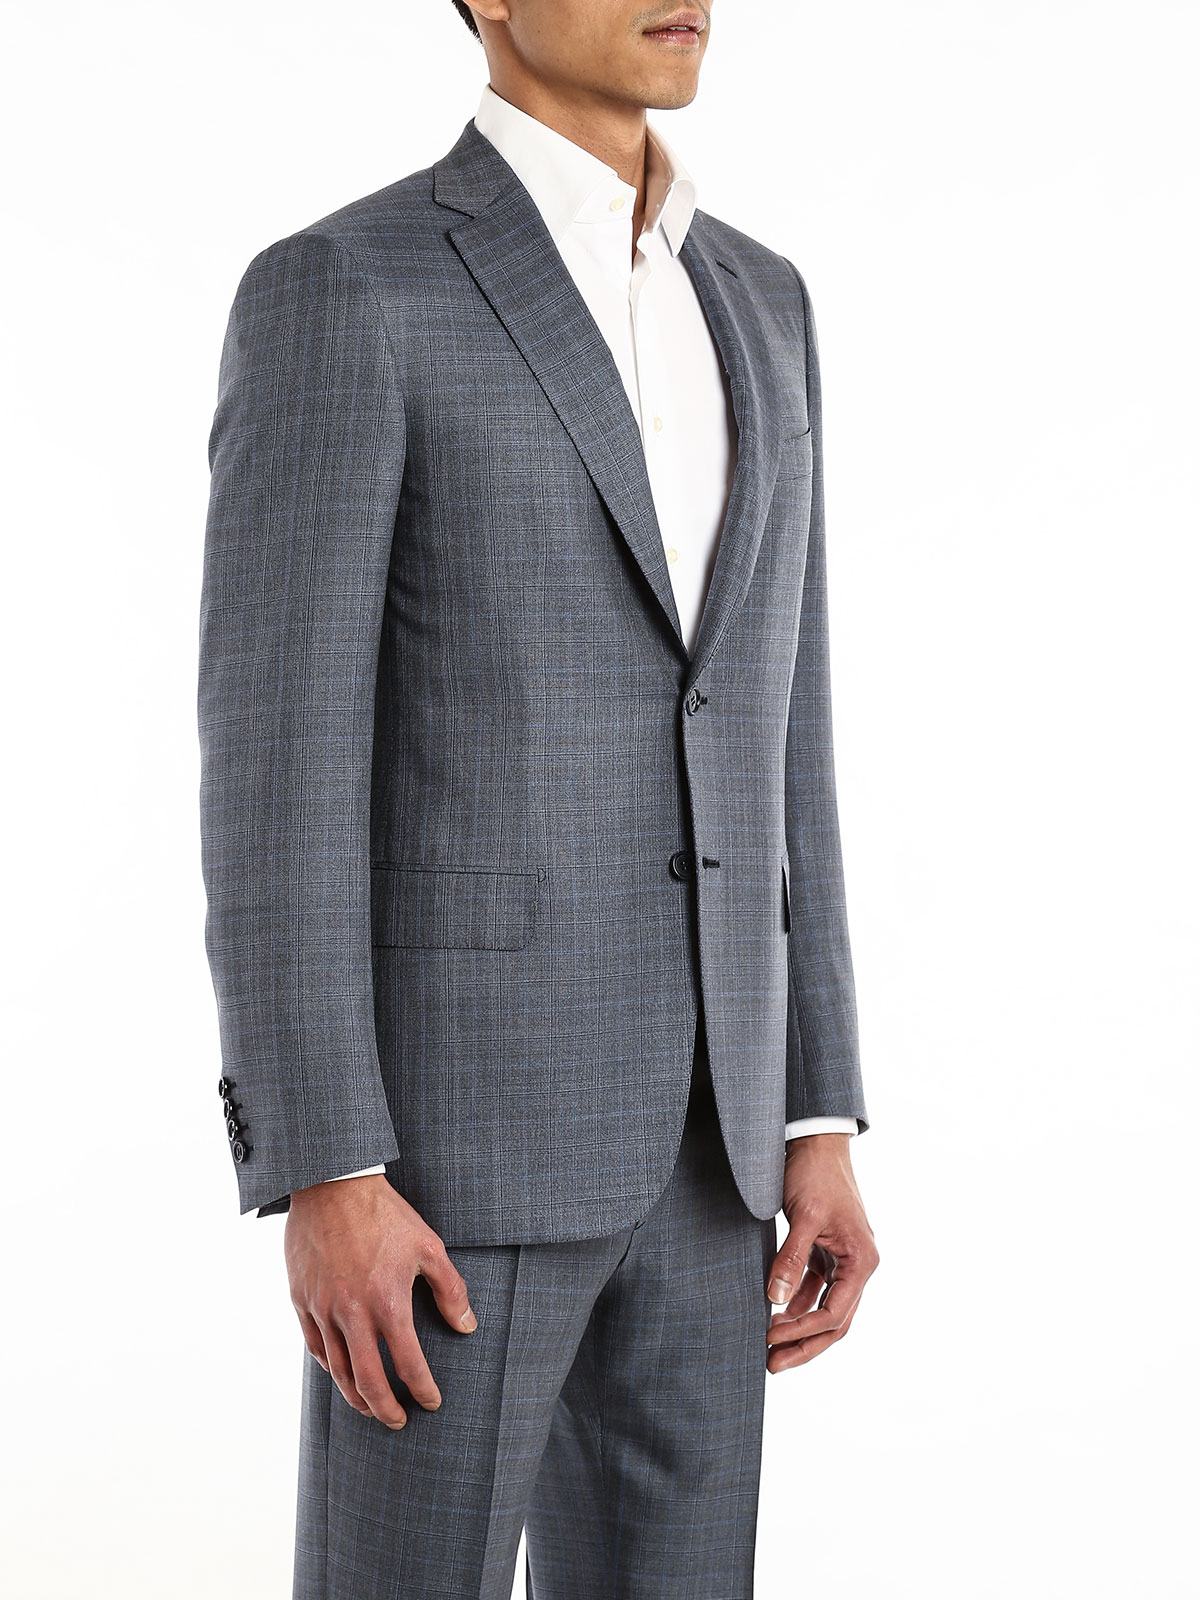 Brioni Spring 2022 Menswear Collection | Summer suits men, Blue suit men,  Formal suits men